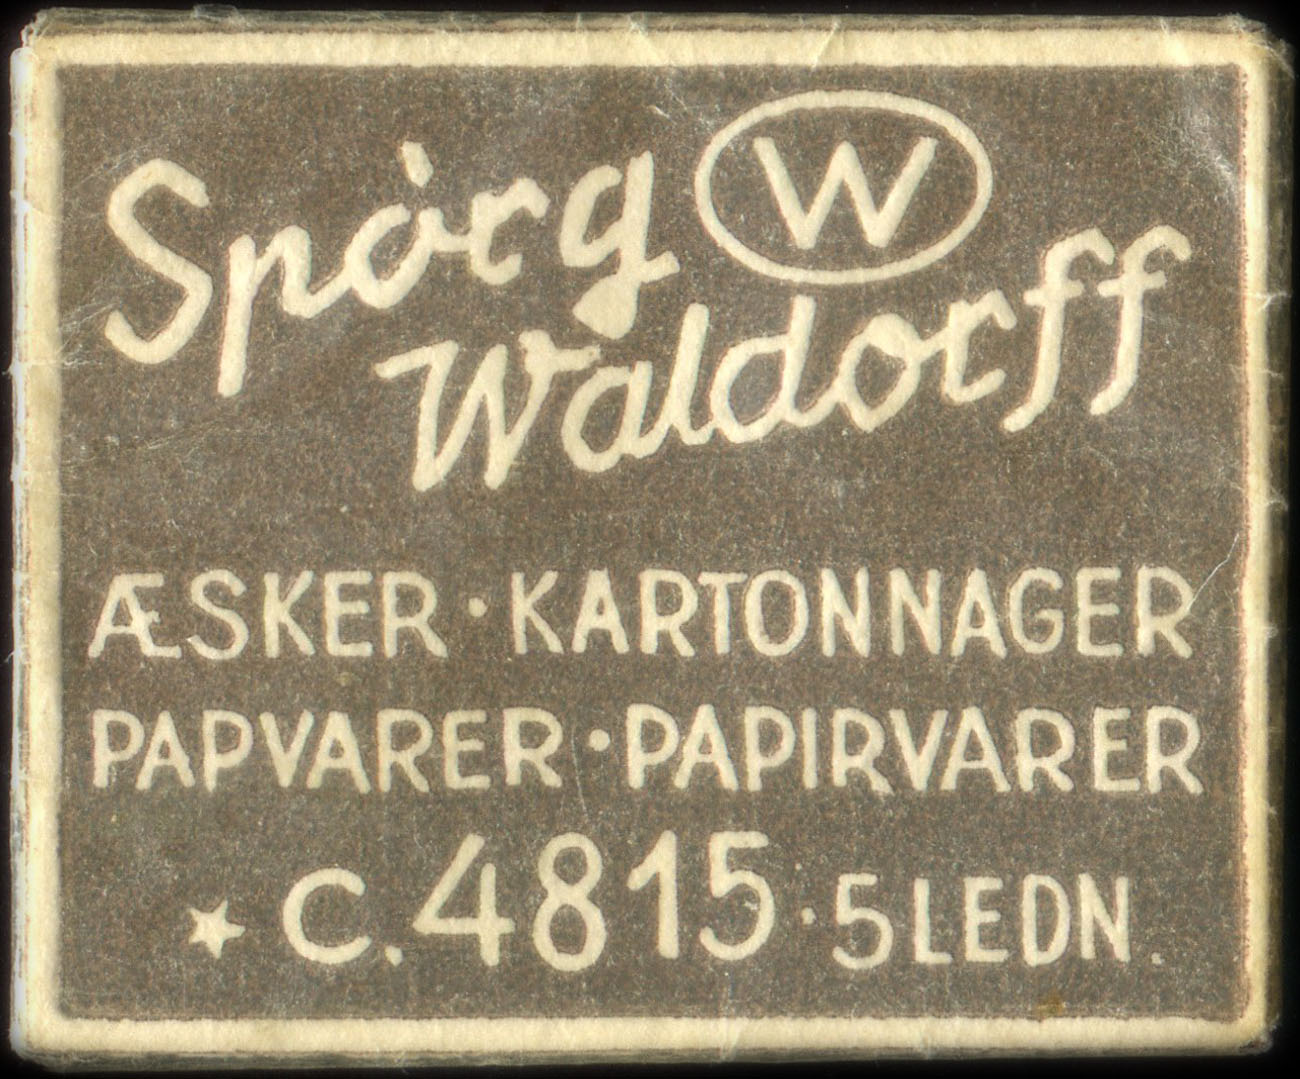 Timbre-monnaie Spòrg Waldorff - Æsker - Kartonnager - Papvarer - Papirvarer - C.4815. 5 Ledn - Danemark